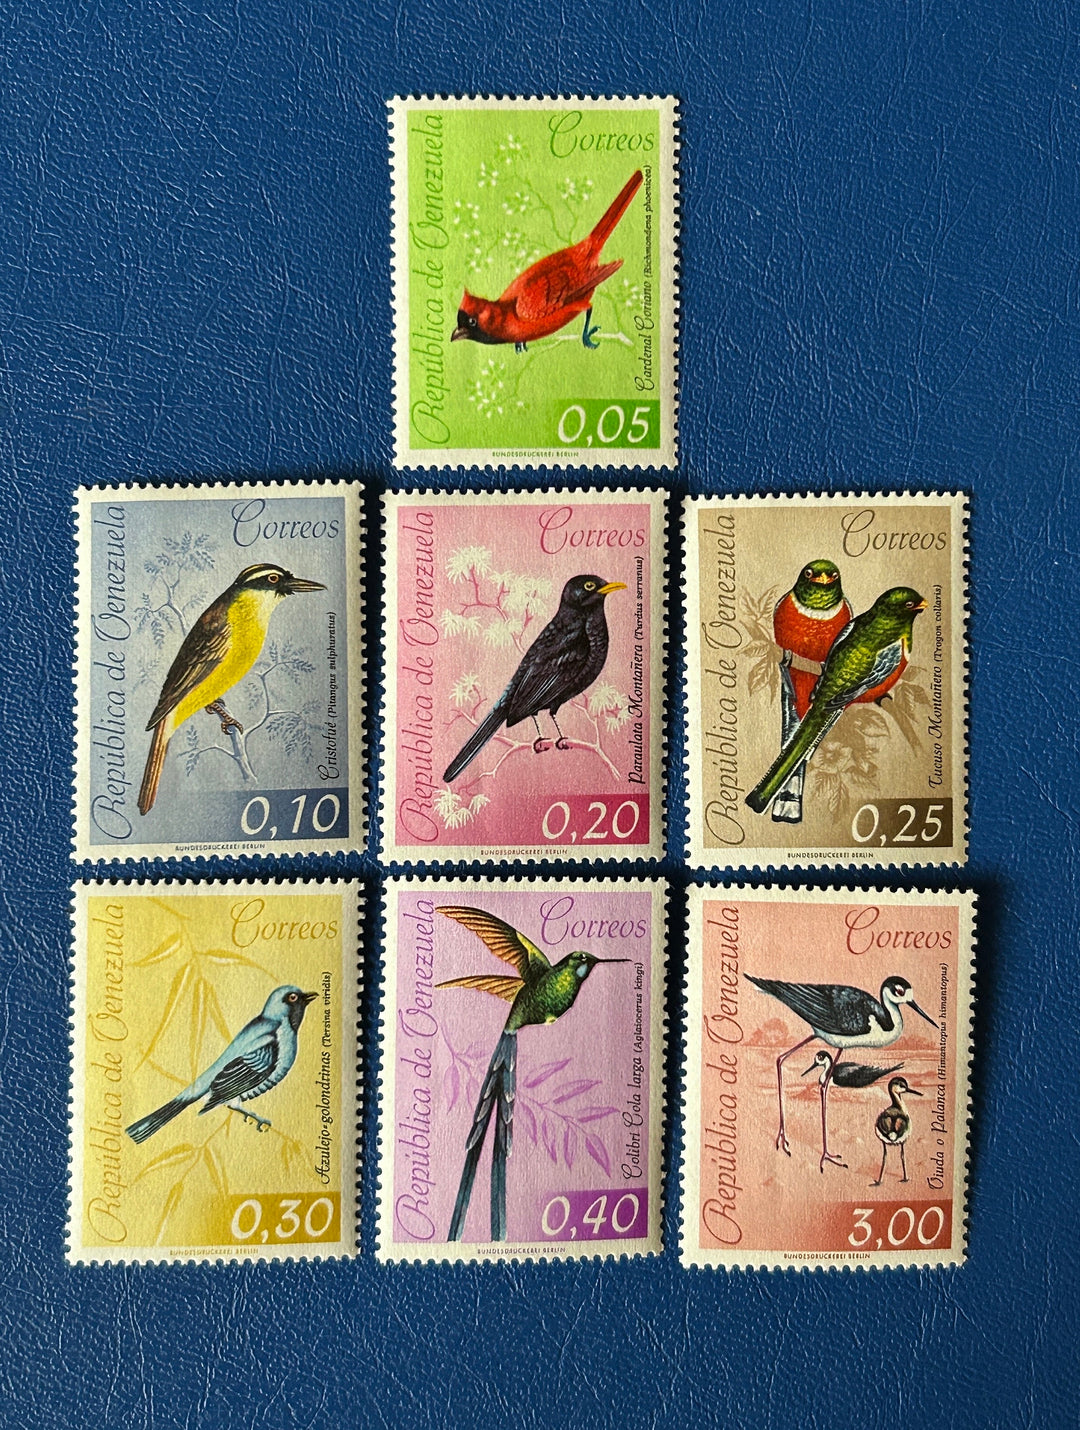 Venezuela - Original Vintage Postage Stamps- 1961 - Birds - for the collector, artist or crafter